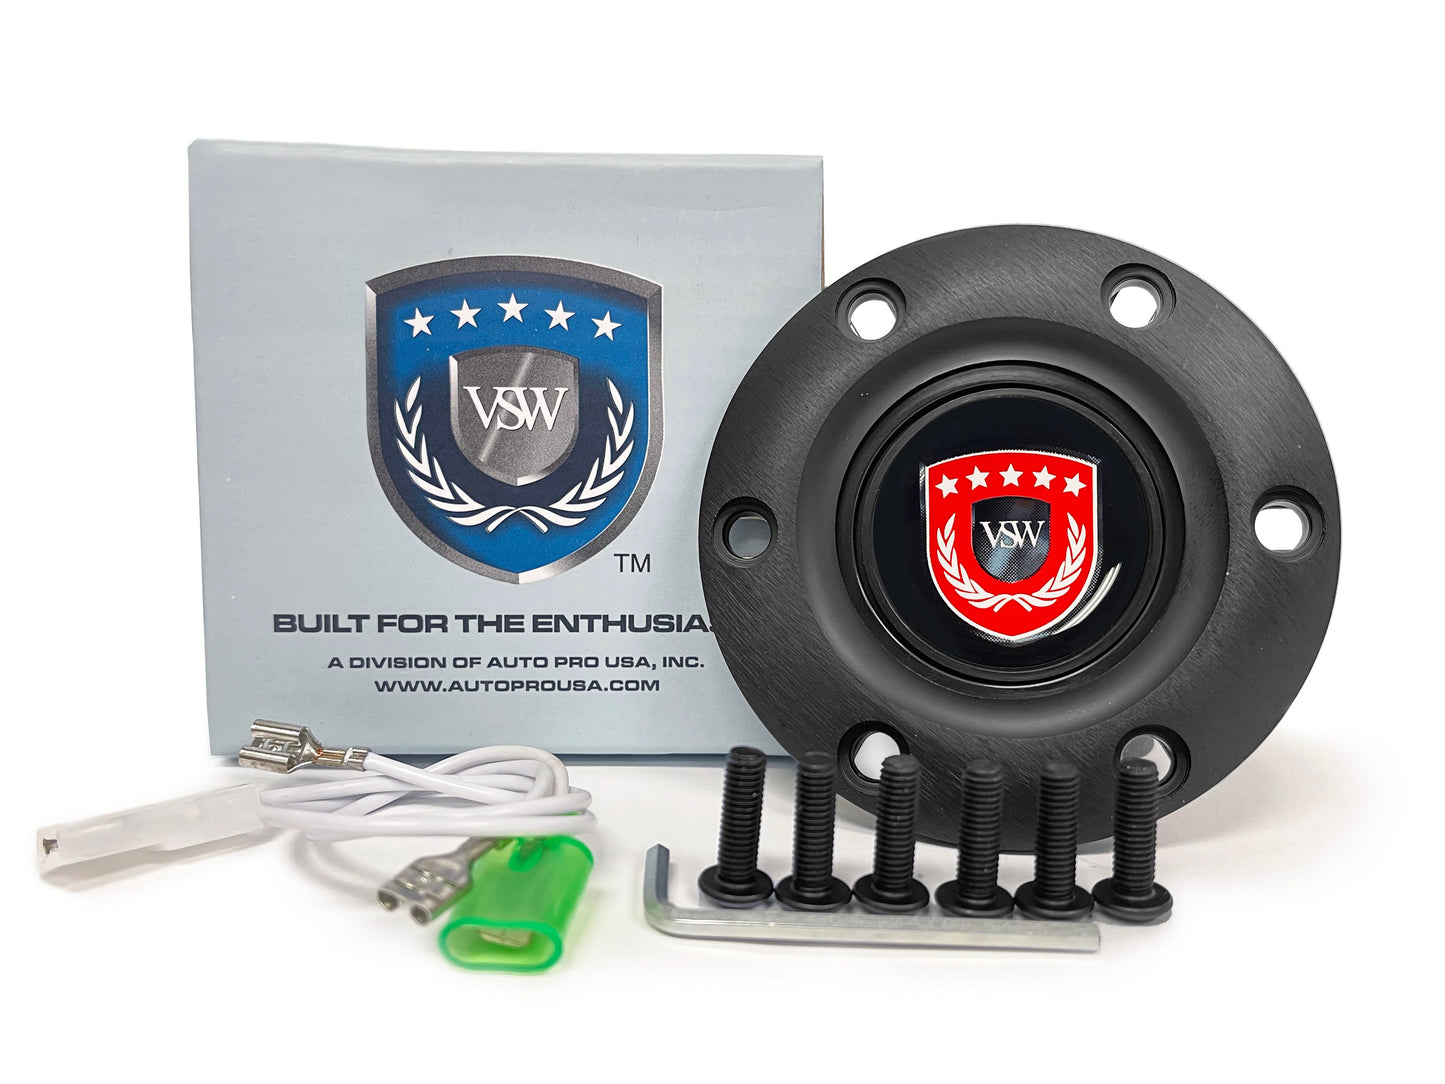 VSW S6 | Red VSW Emblem | Black Horn Button | STEVSWRED-BLK